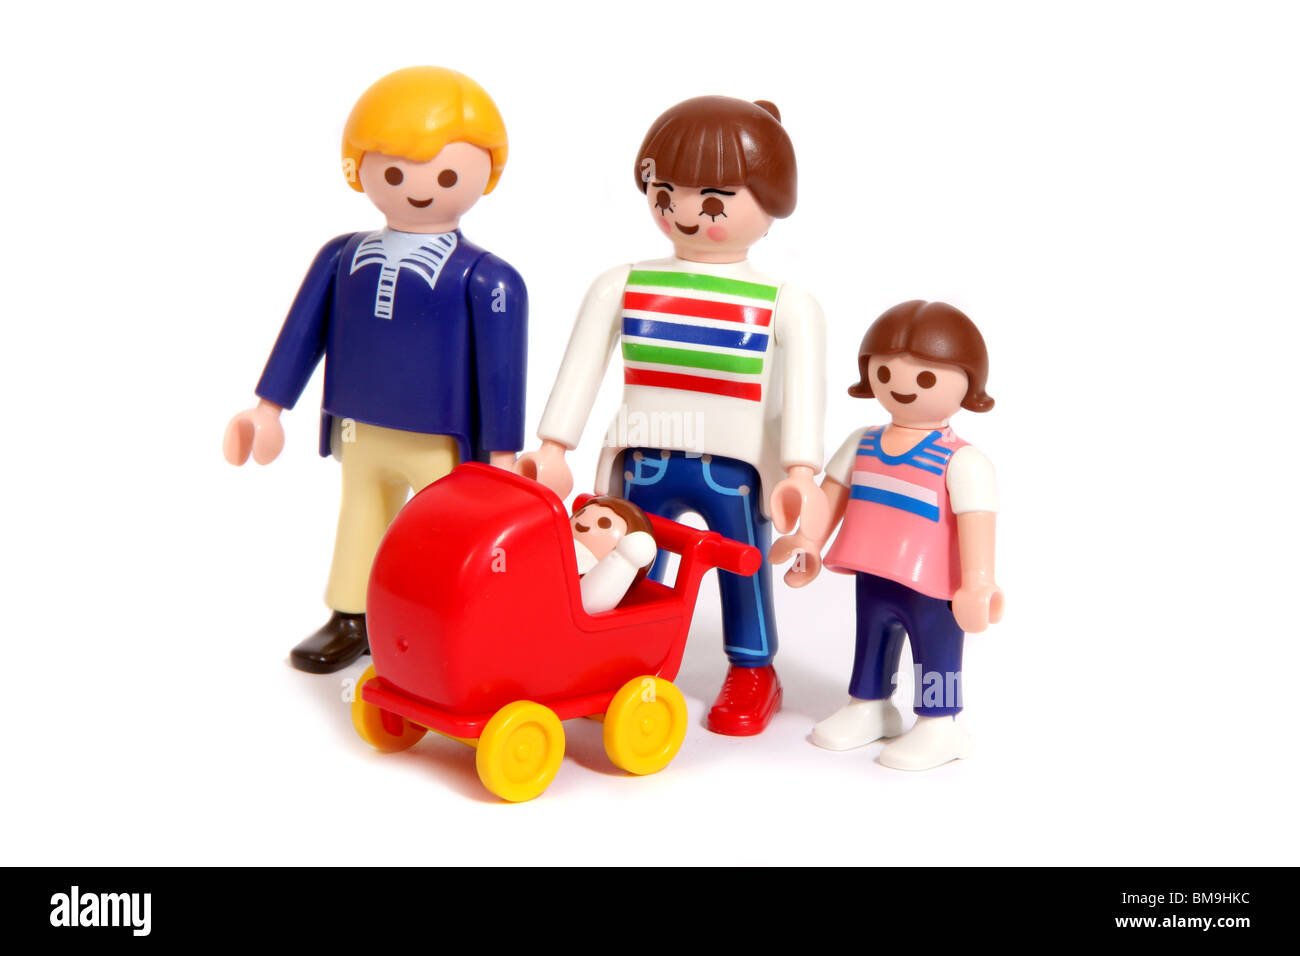 Eine Familie von vier Playmobil-Figuren, darunter ein Baby in einem  Kinderwagen Stockfotografie - Alamy